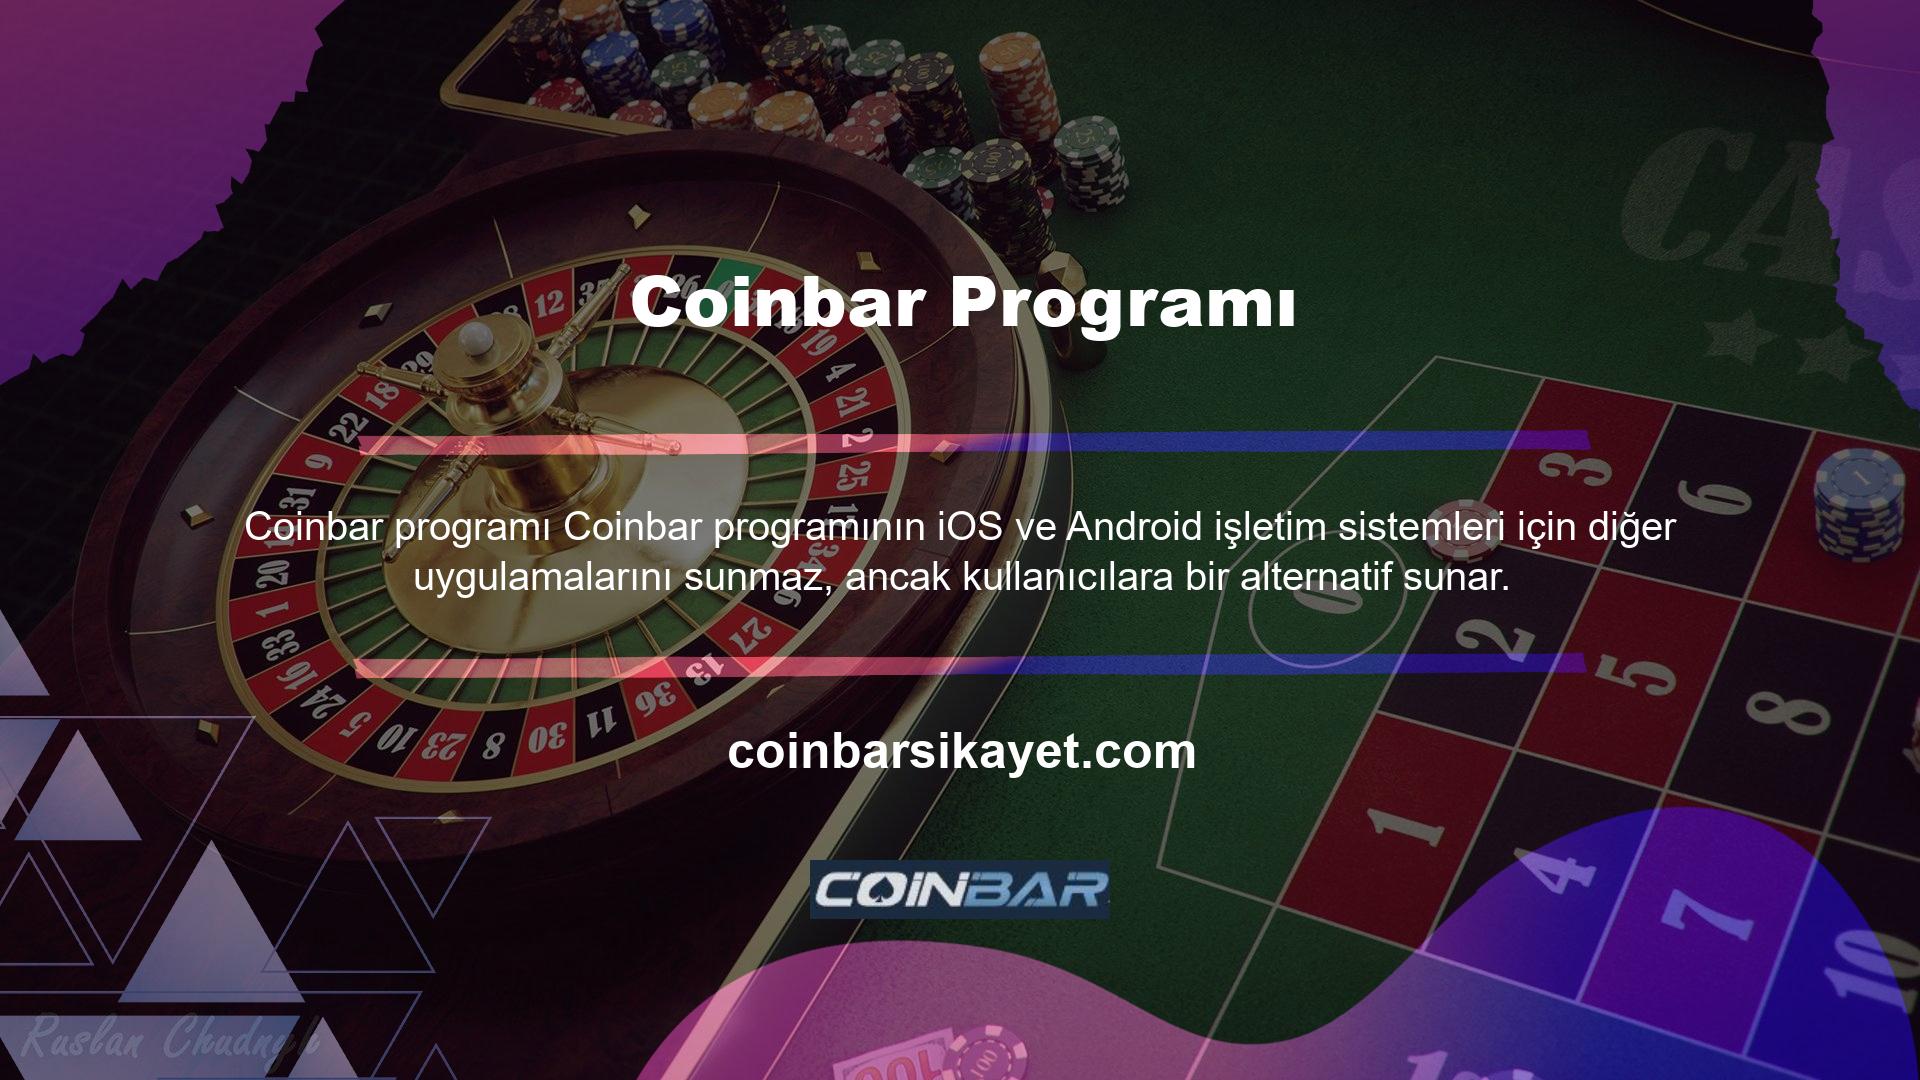 Böylece kullanıcılar Coinbar yazılımını akıllı cihazlarına ve tabletlerine kolayca indirebilir